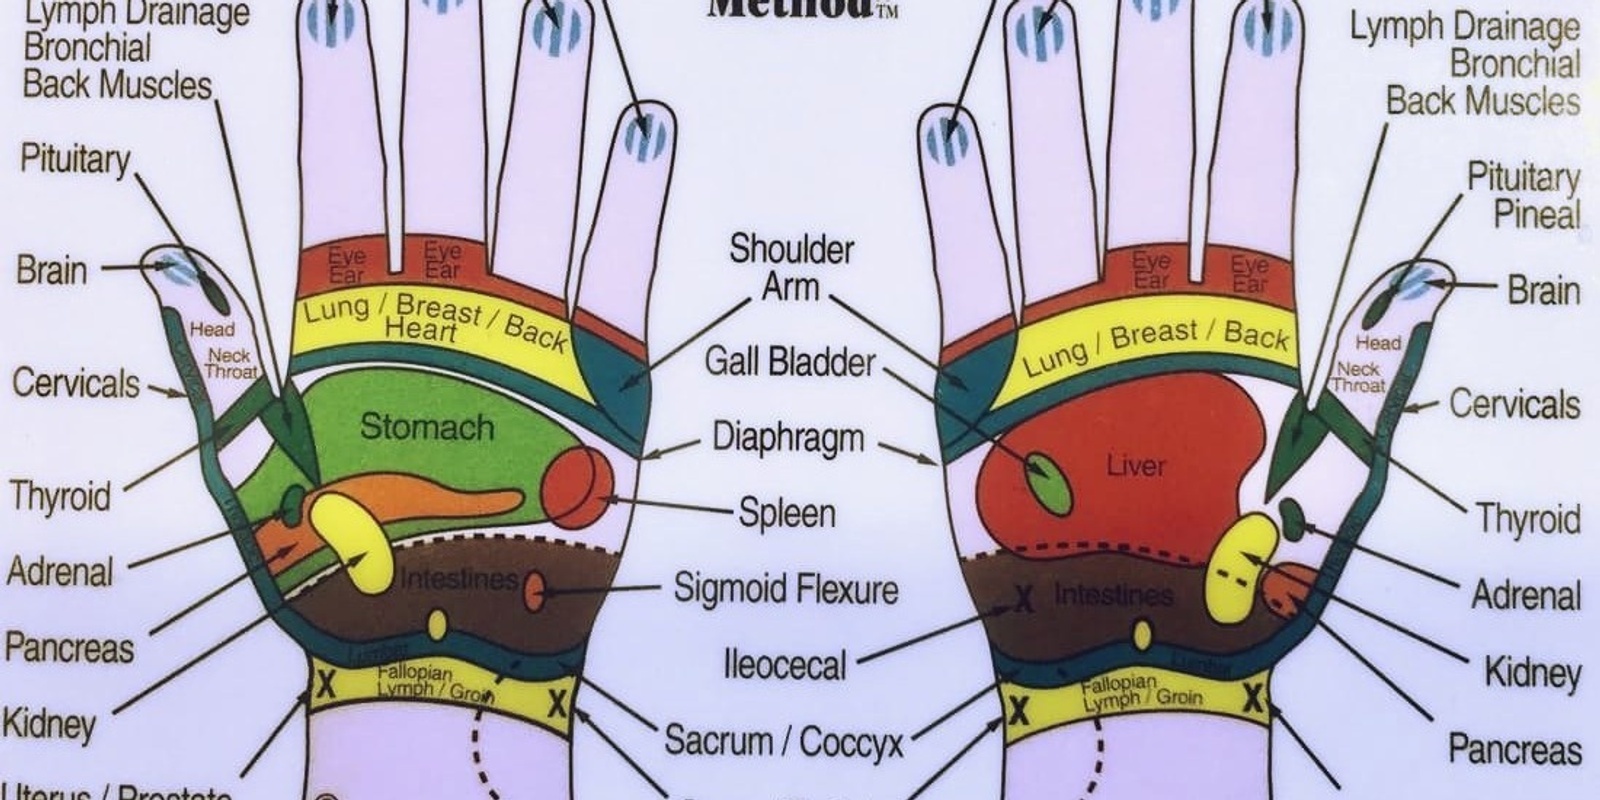 Hand reflexology